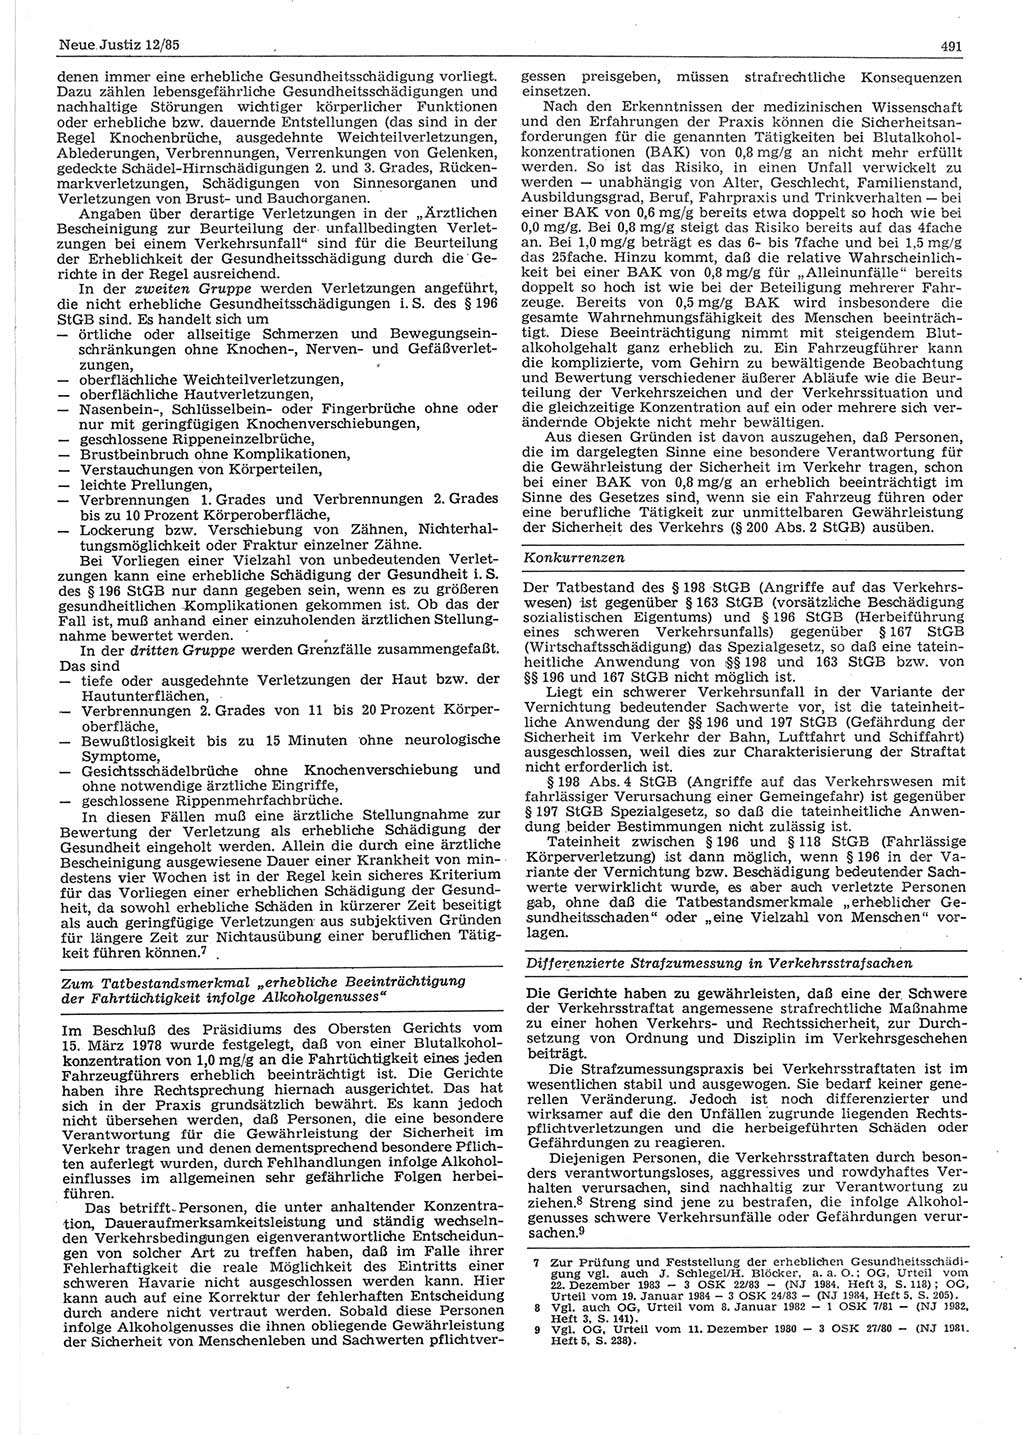 Neue Justiz (NJ), Zeitschrift für sozialistisches Recht und Gesetzlichkeit [Deutsche Demokratische Republik (DDR)], 39. Jahrgang 1985, Seite 491 (NJ DDR 1985, S. 491)